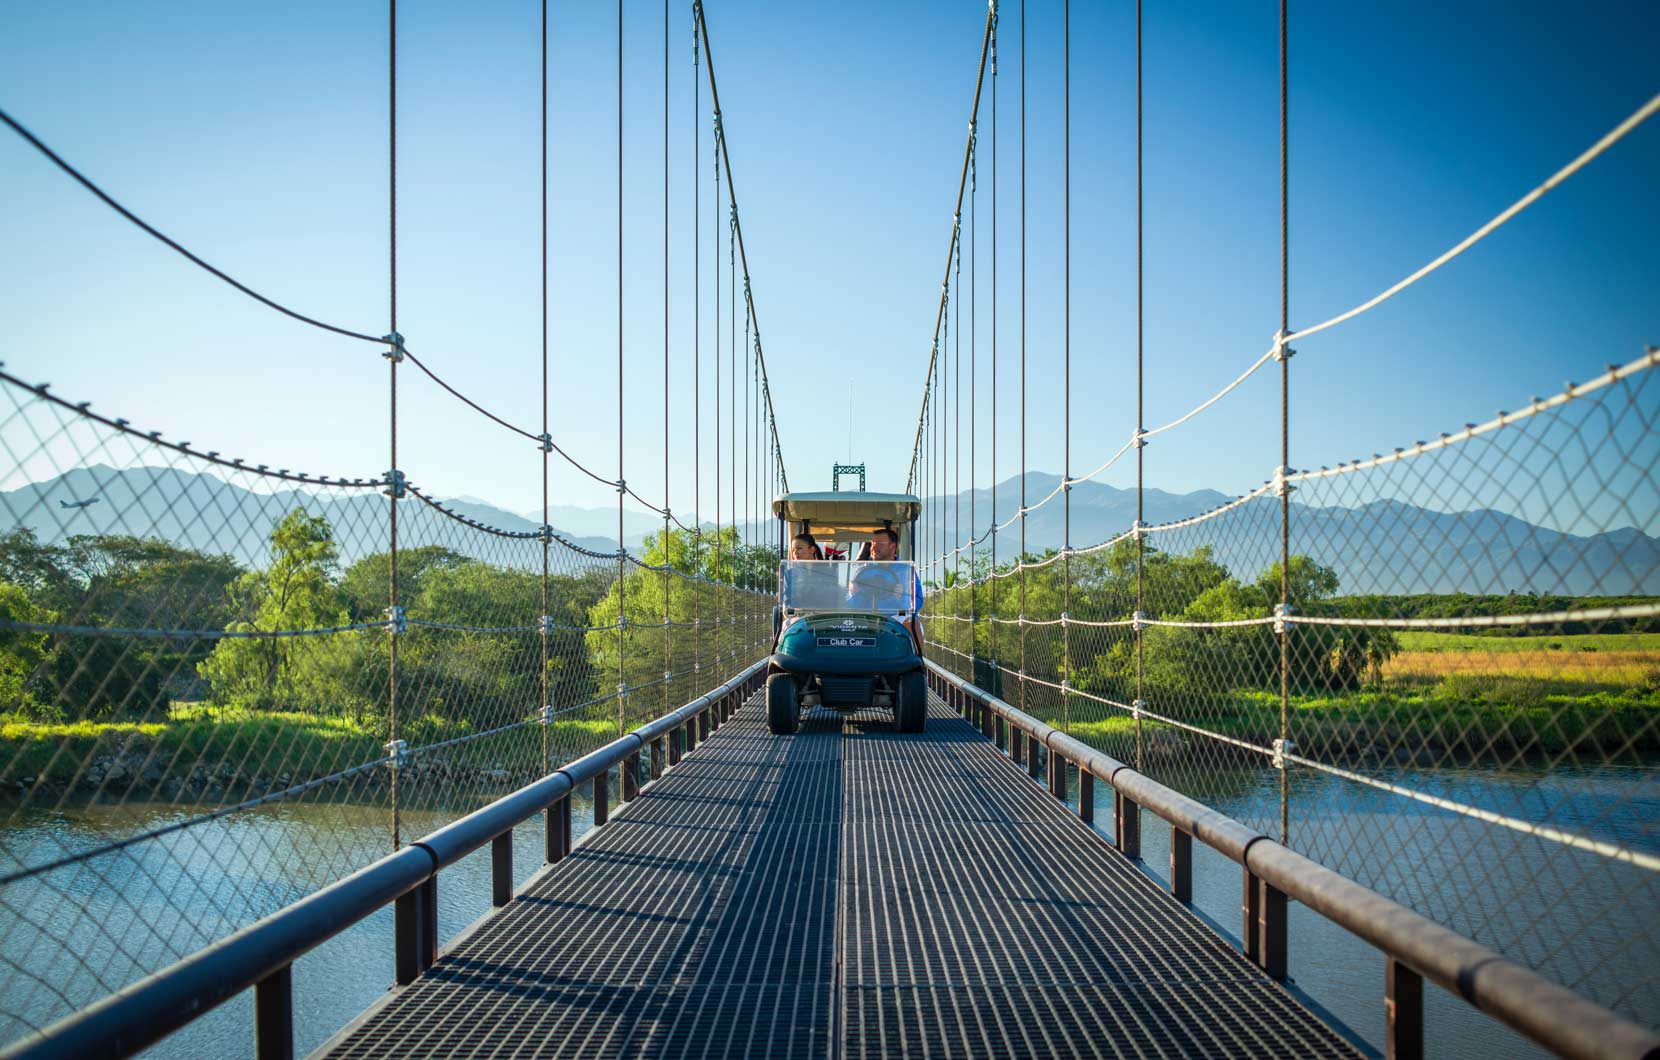 El puente fue diseñado para permitir el paso de un solo carrito, lo cual le garantiza vistas maravillosas.